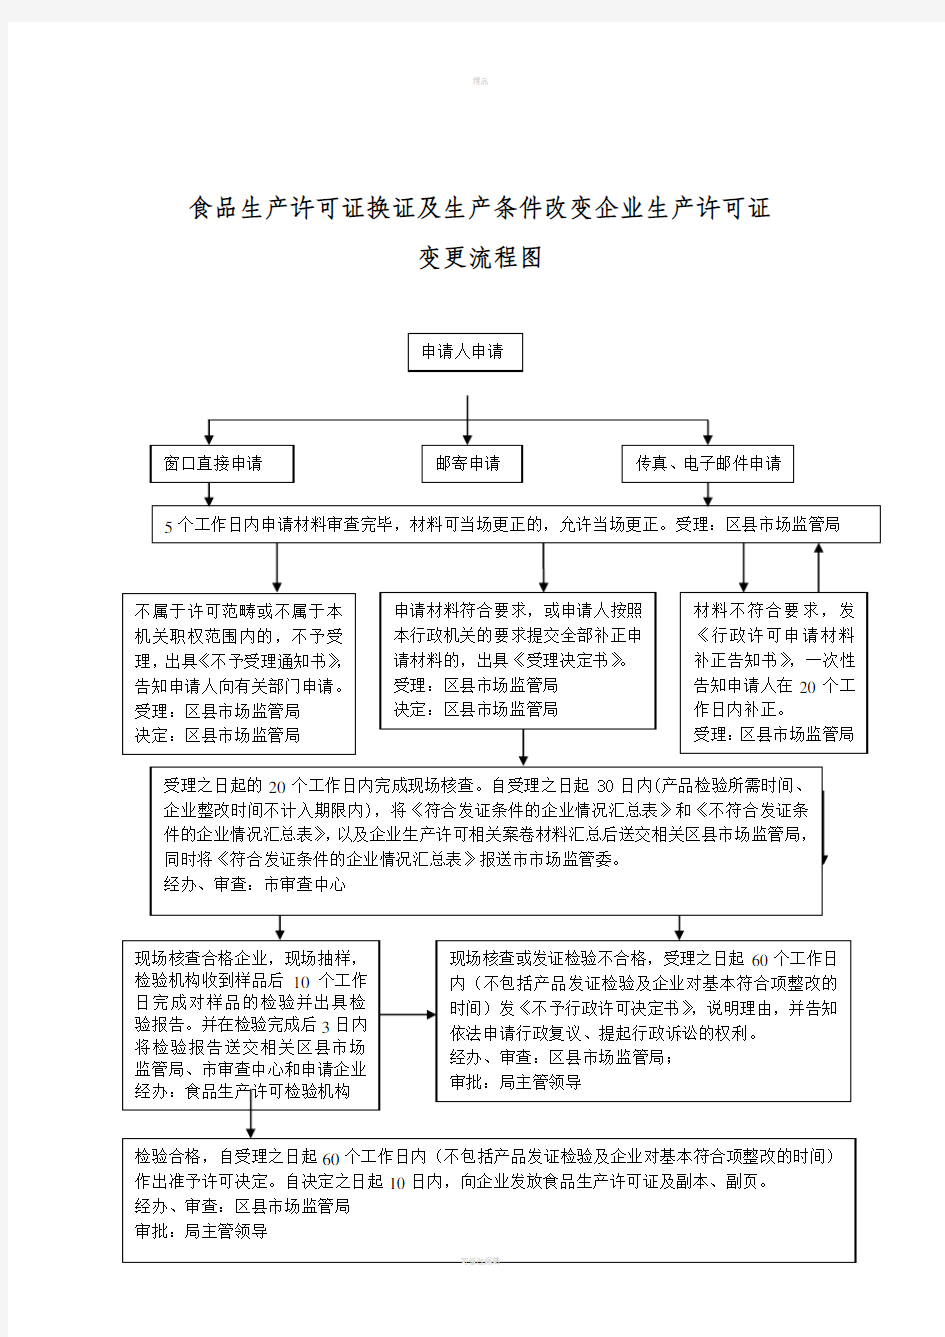 行政审批流程图(1)